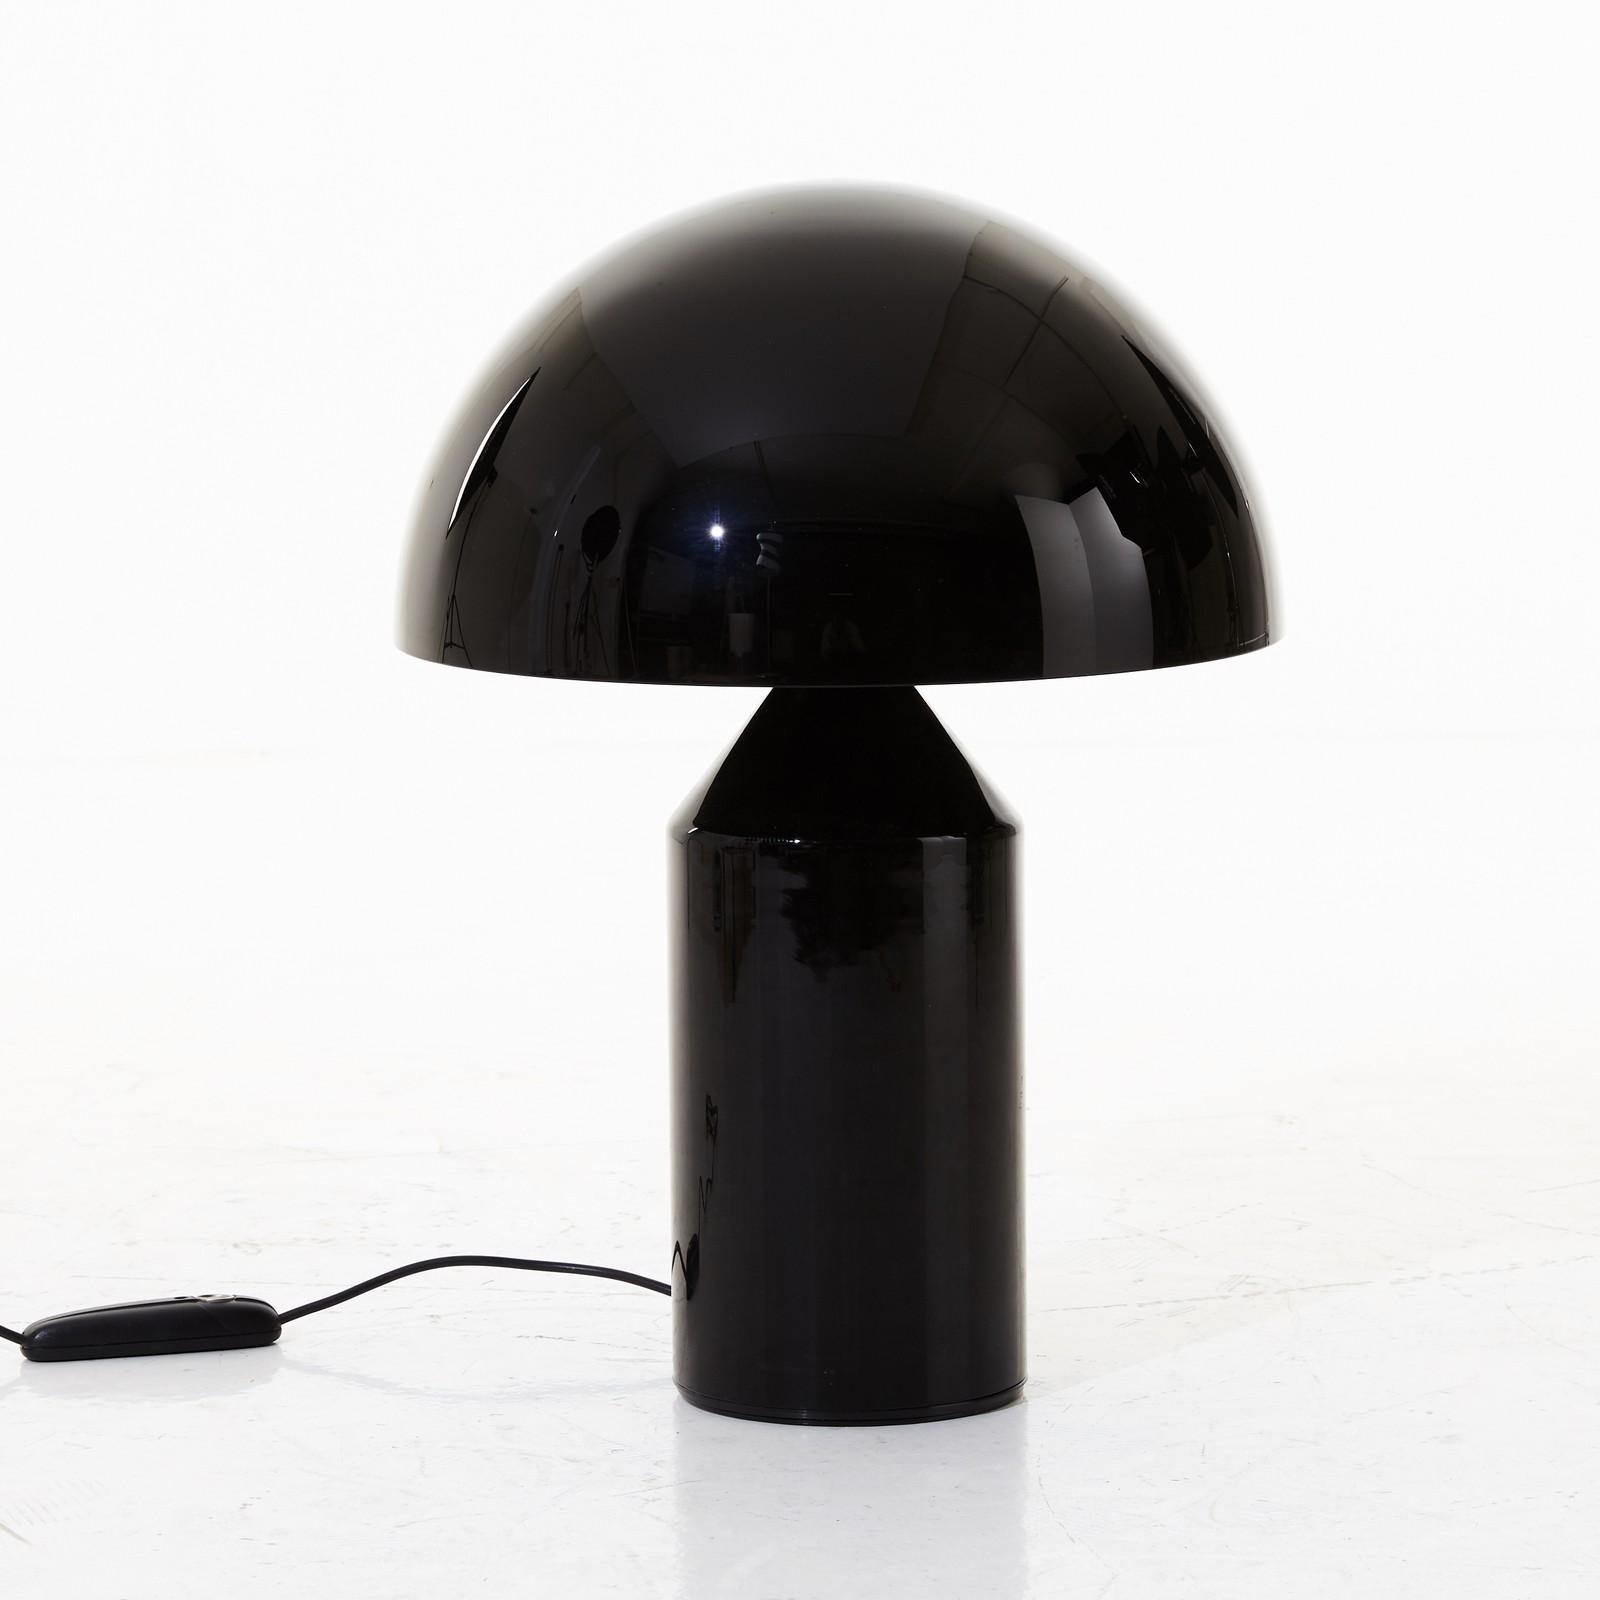 La lampe de table Atollo (1977) se distingue par sa construction géométrique minimale. Cette lampe imitée dans le monde entier et pourtant inimitable a remporté de nombreux prix, et on la trouve également en tant qu'exposition permanente dans de